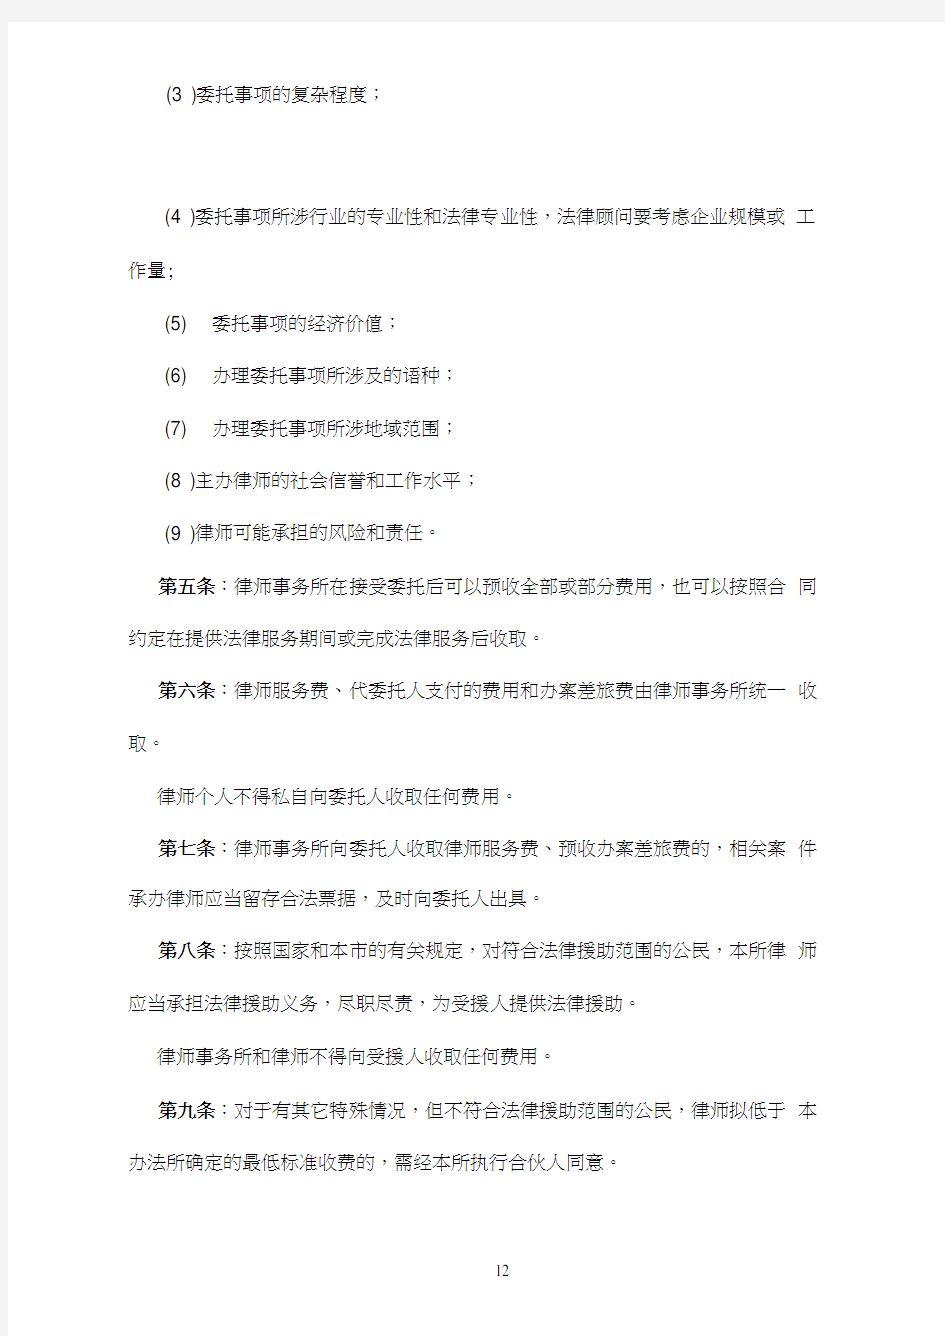 北京盈科律师事务所法律服务收费办法(20201229165243)